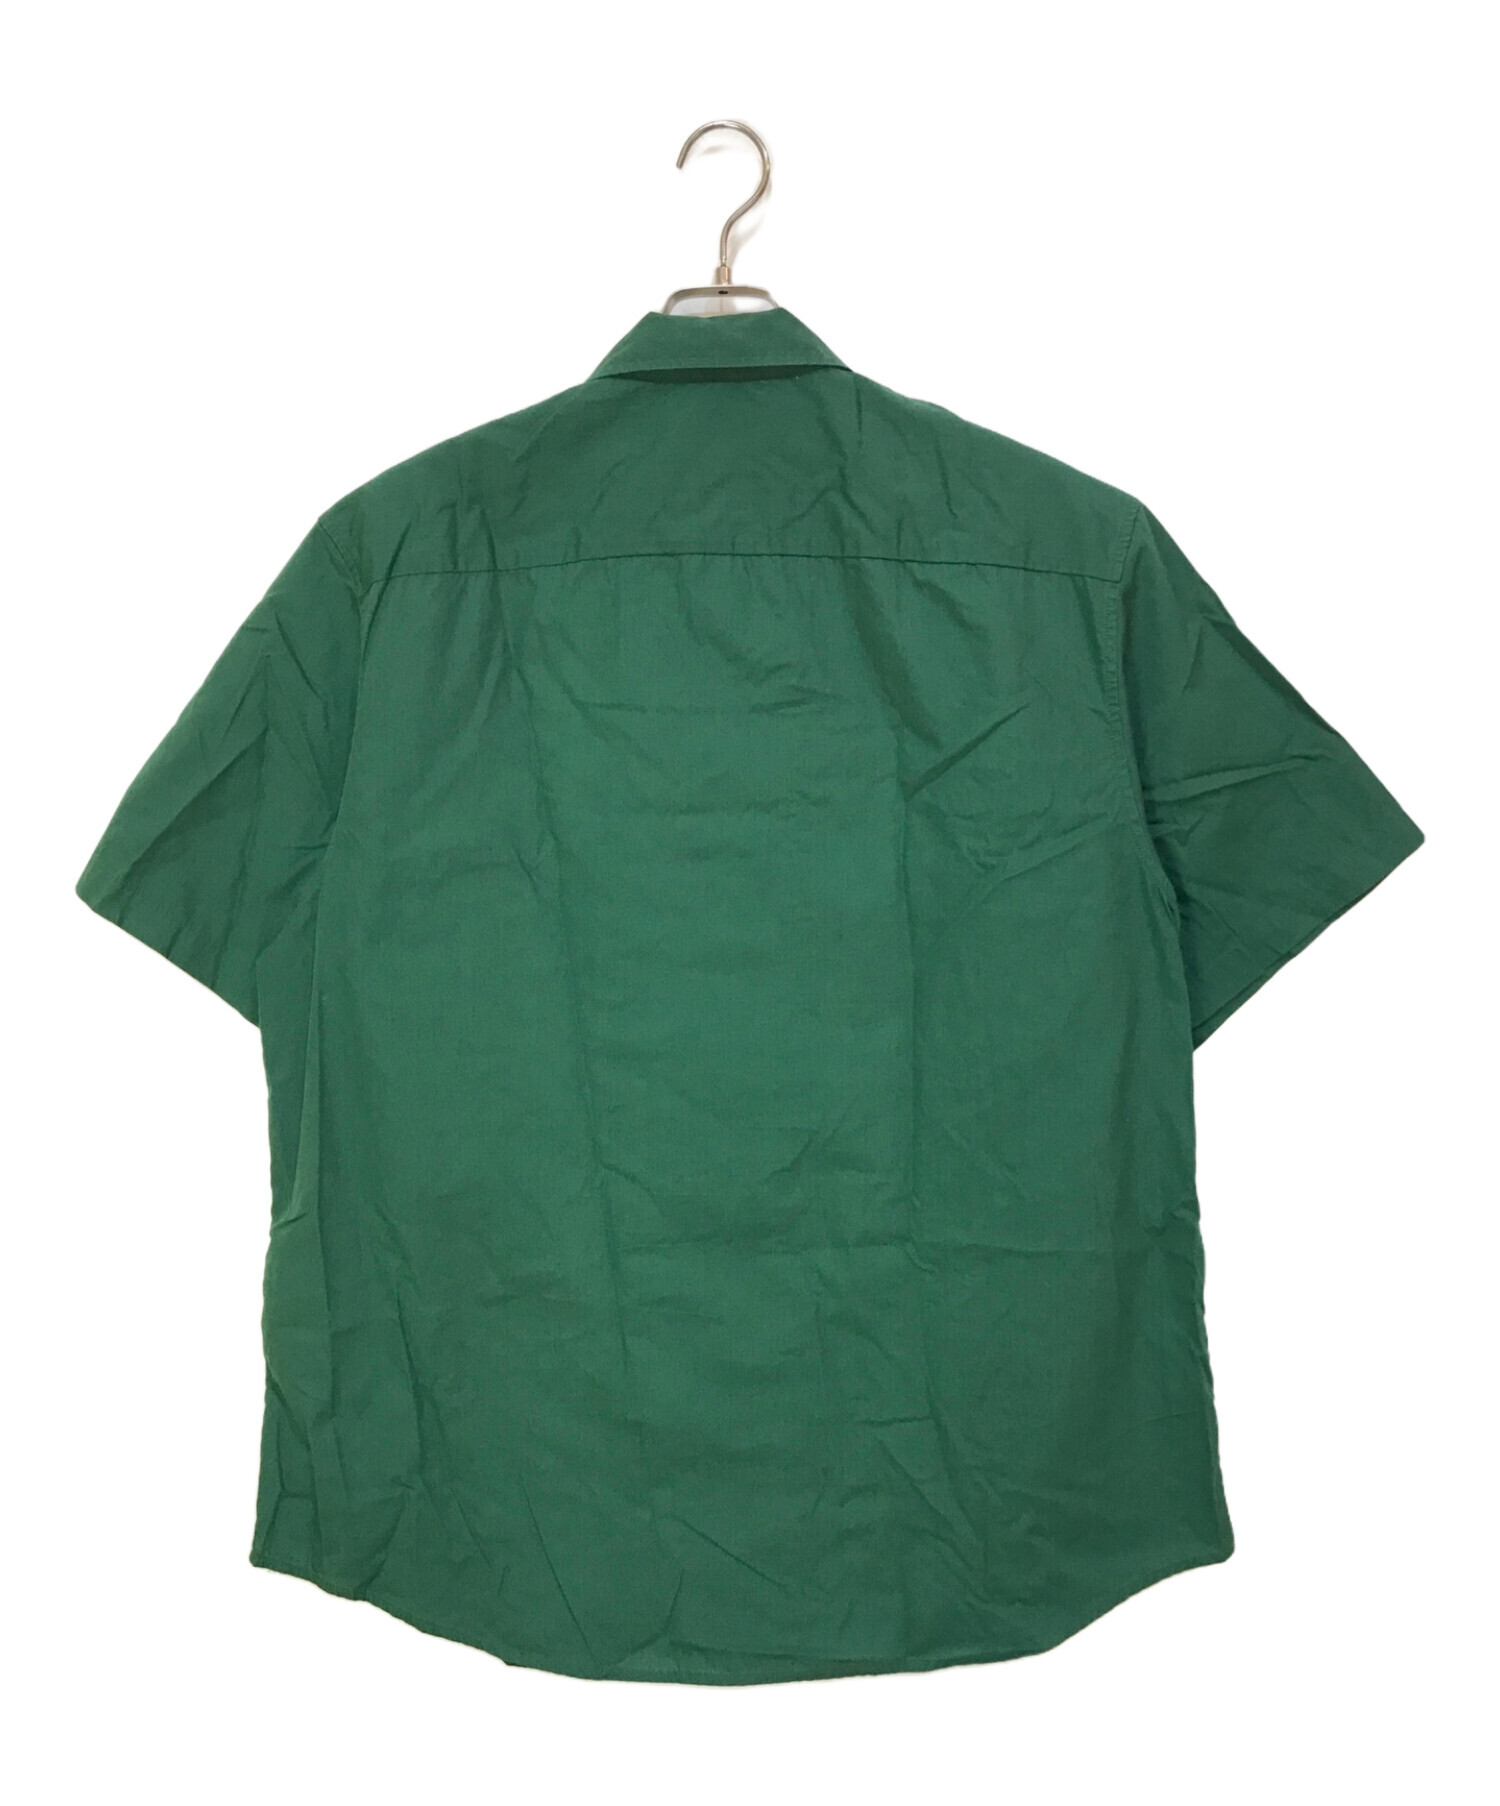 直販新品【希少サイズ】 supreme Rib work shirt グリーン XL トップス